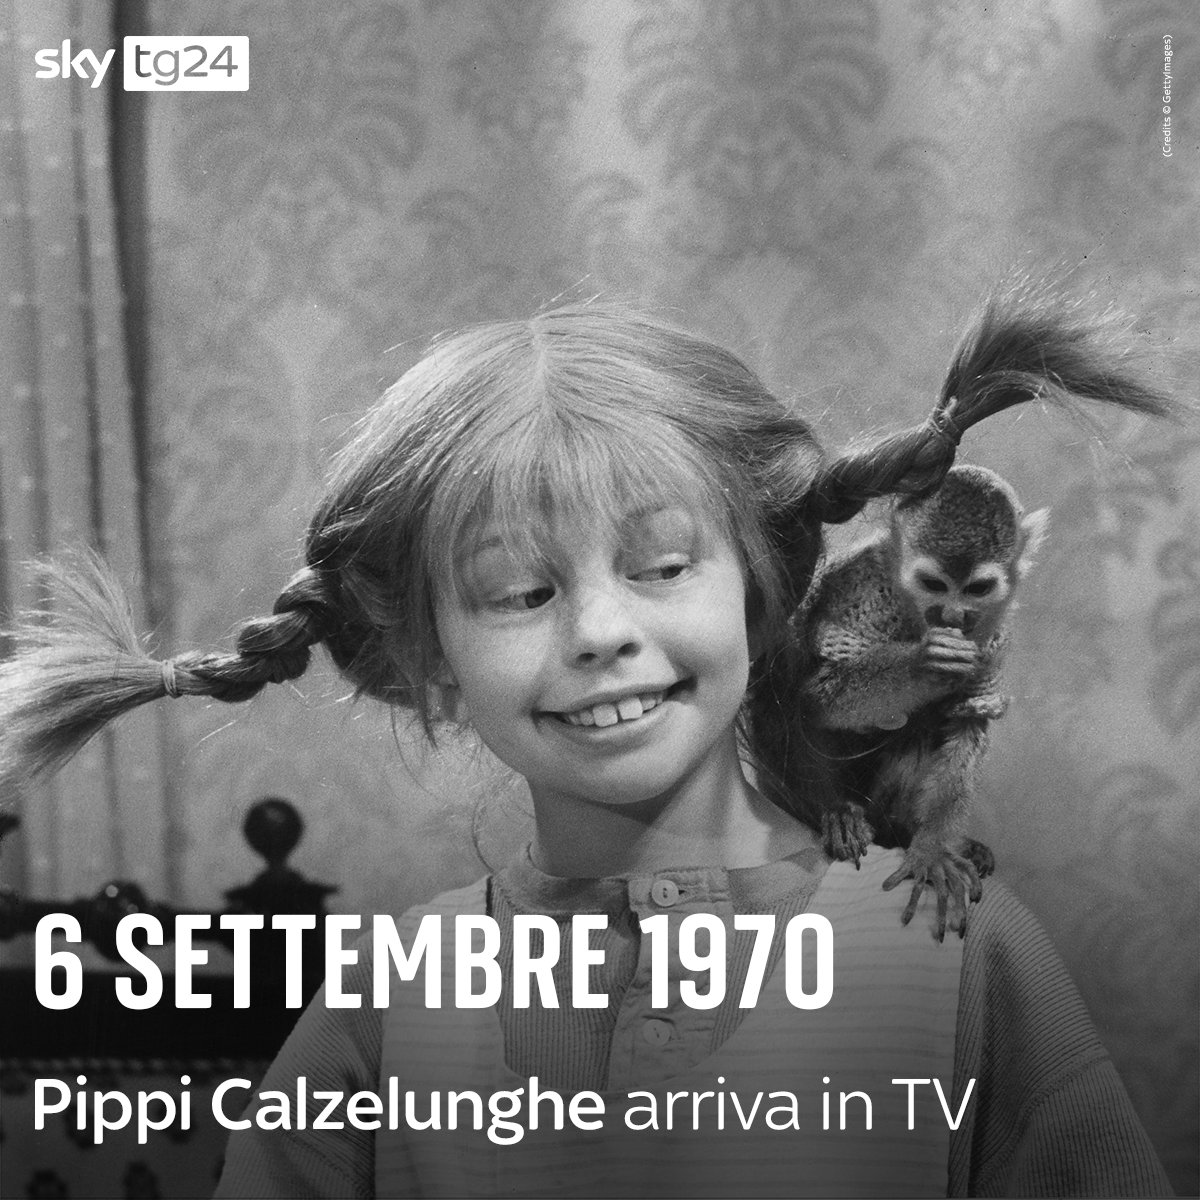 10 anni, capelli rossi e trecce all'insù. Il #6settembre 1970 veniva trasmesso in Italia il primo episodio di #PippiCalzelunghe, nata dalla penna della scrittrice svedese Astrid Lindgren